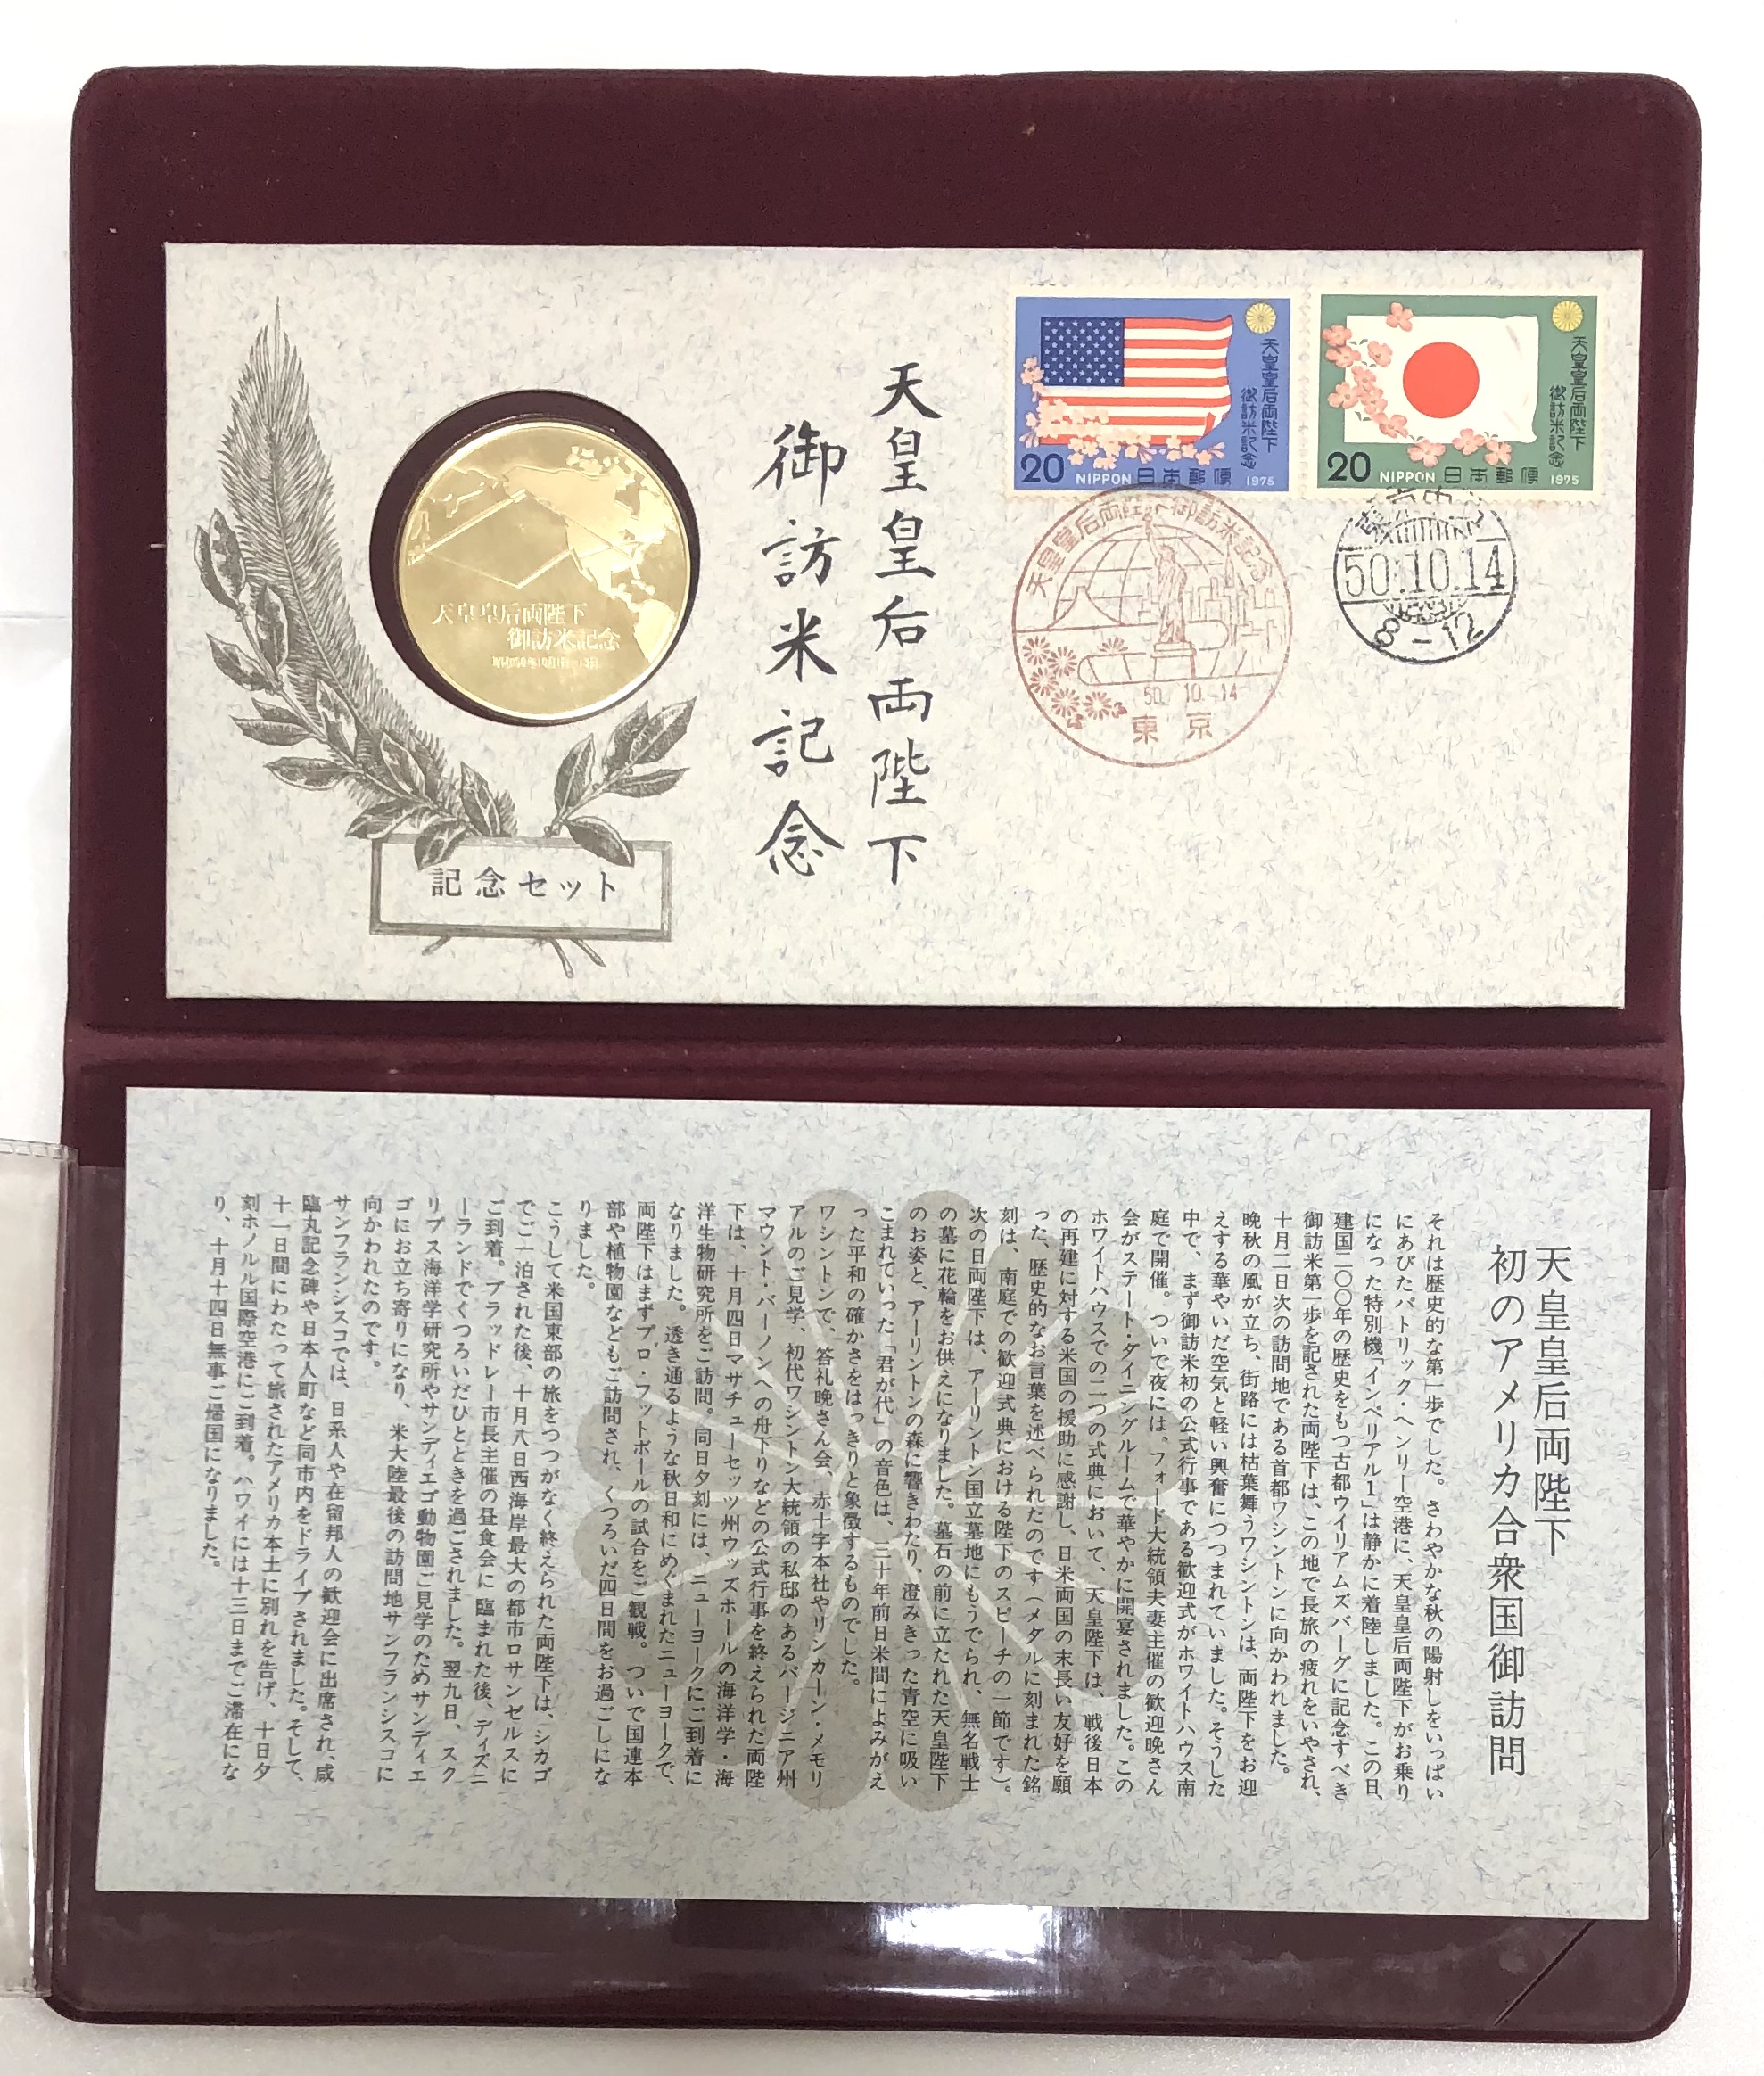 天皇・皇后両陛下御訪米記念メダル【1975年】 - 旧貨幣/金貨/銀貨/記念硬貨